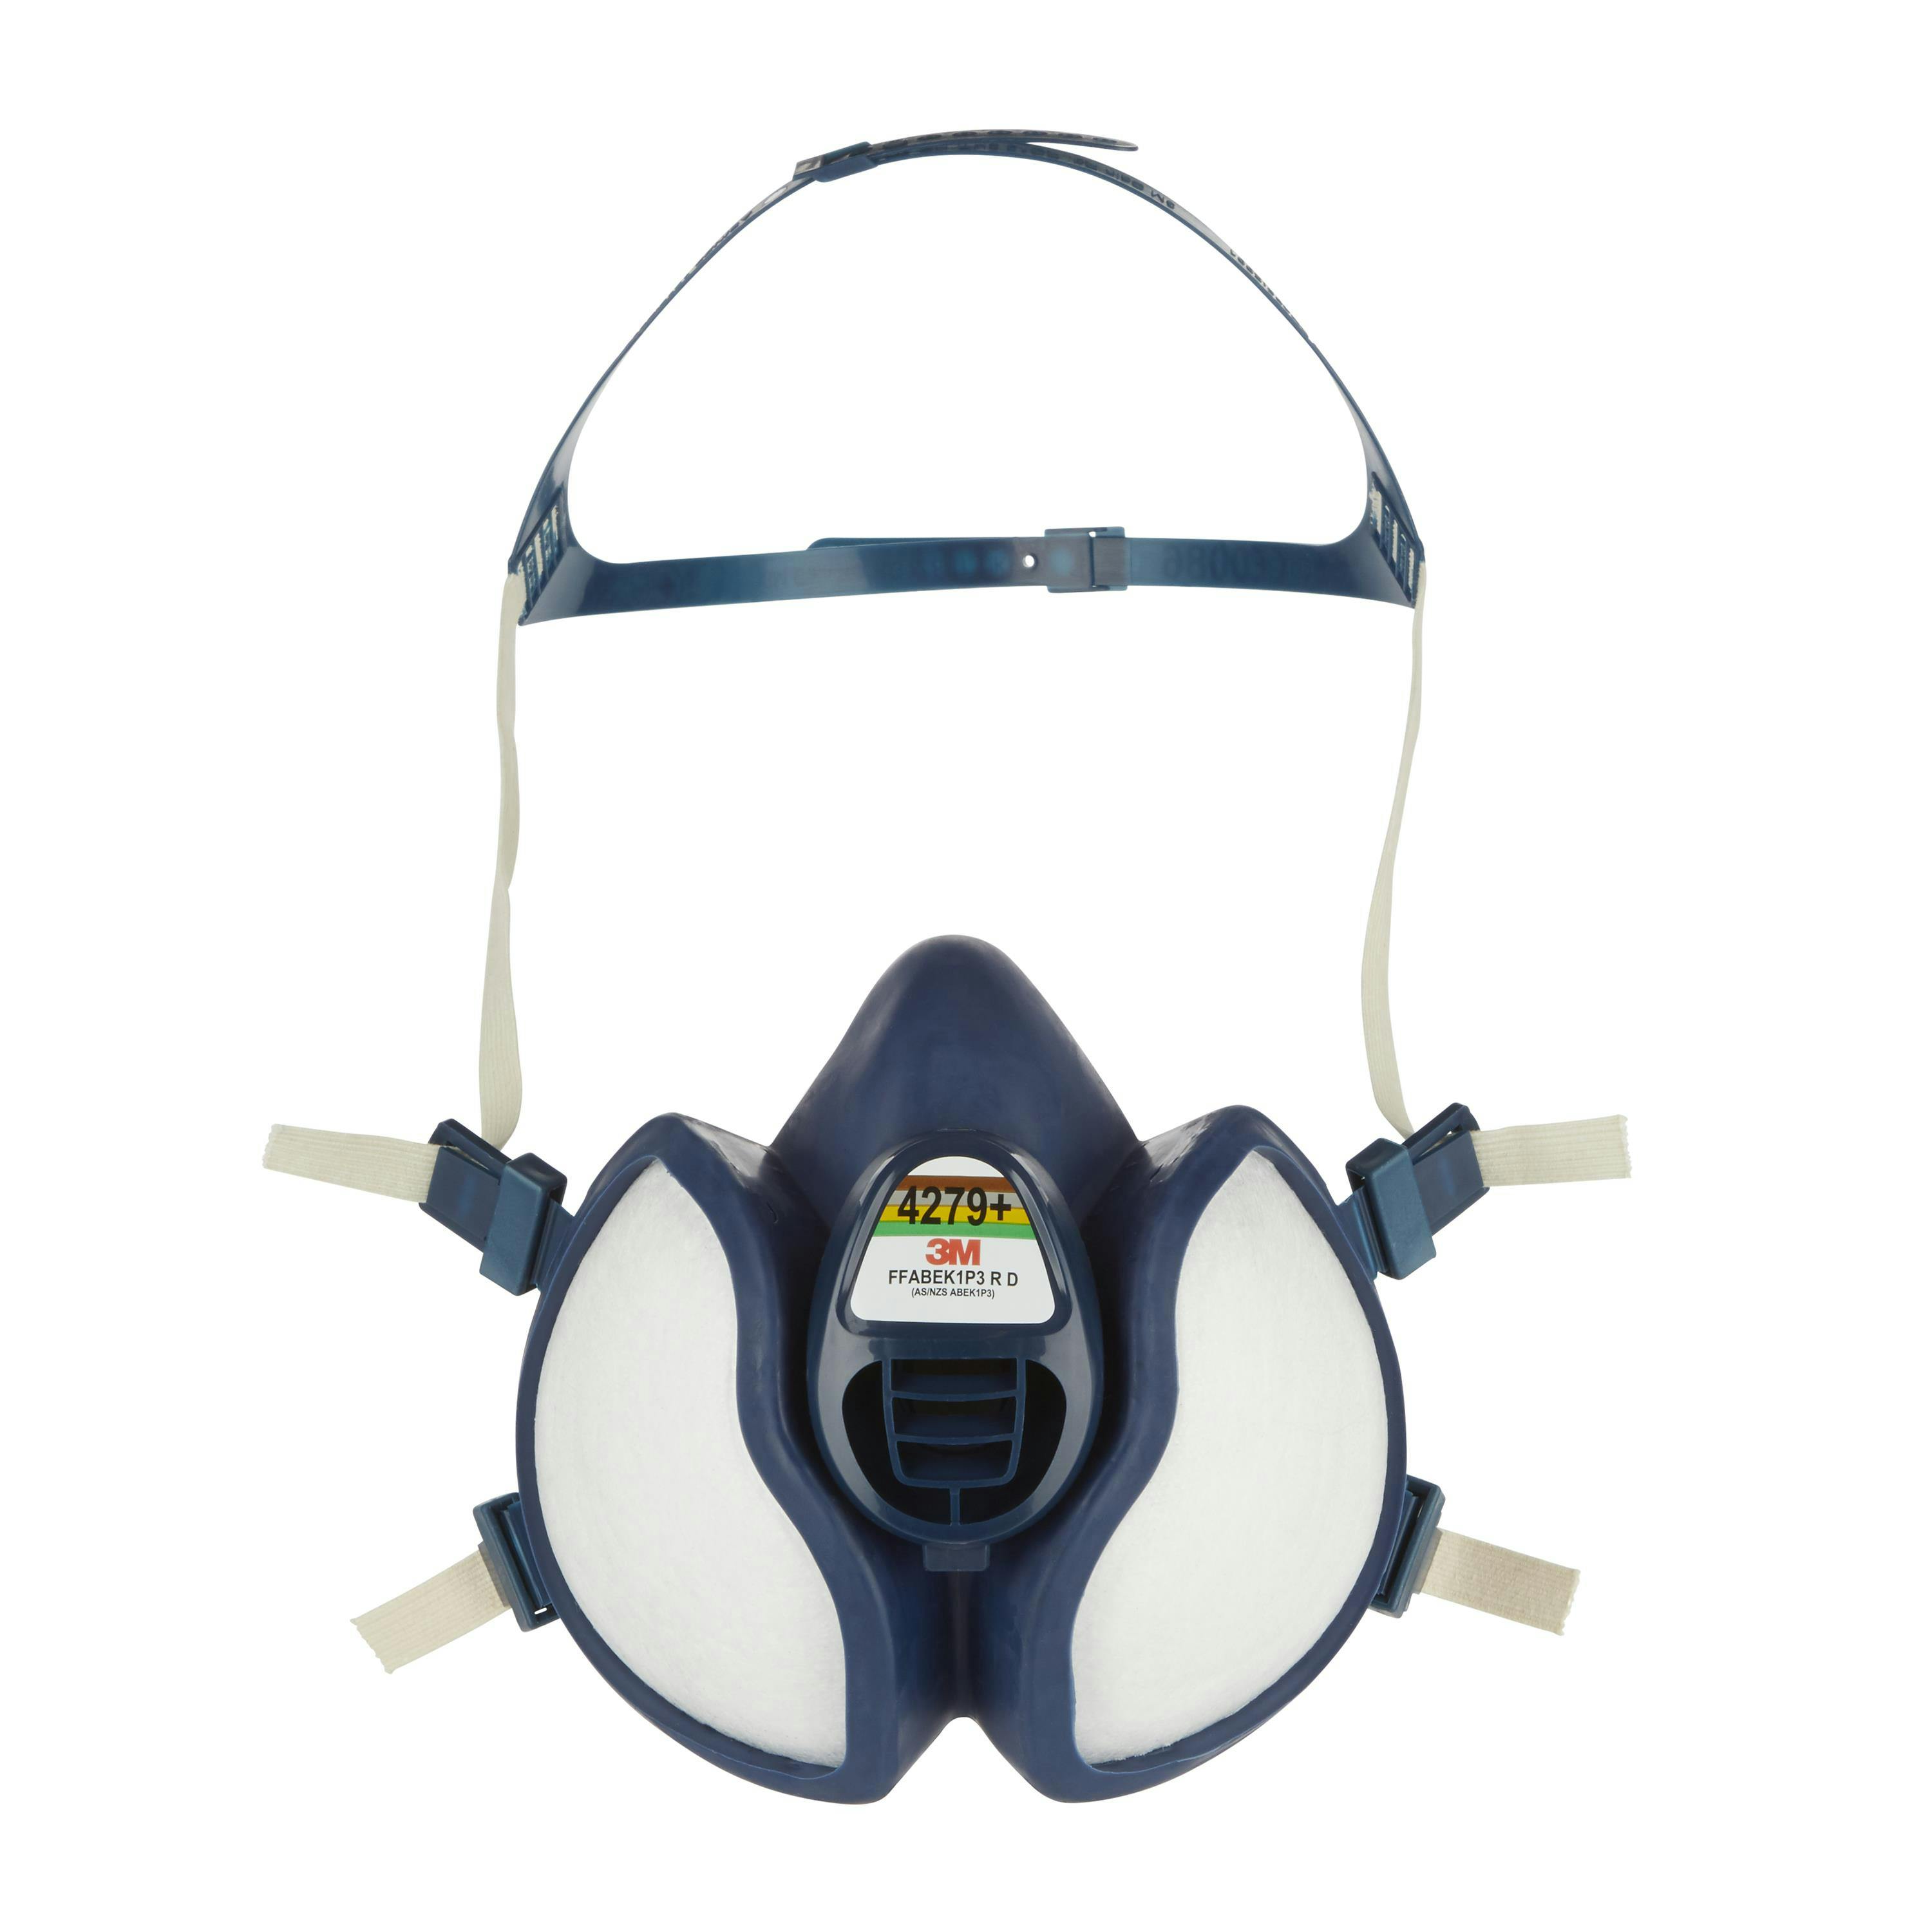 3M™ Maintenance Free Half Face Respirator 4279+, A1B1E1K1P2, 1/Bag